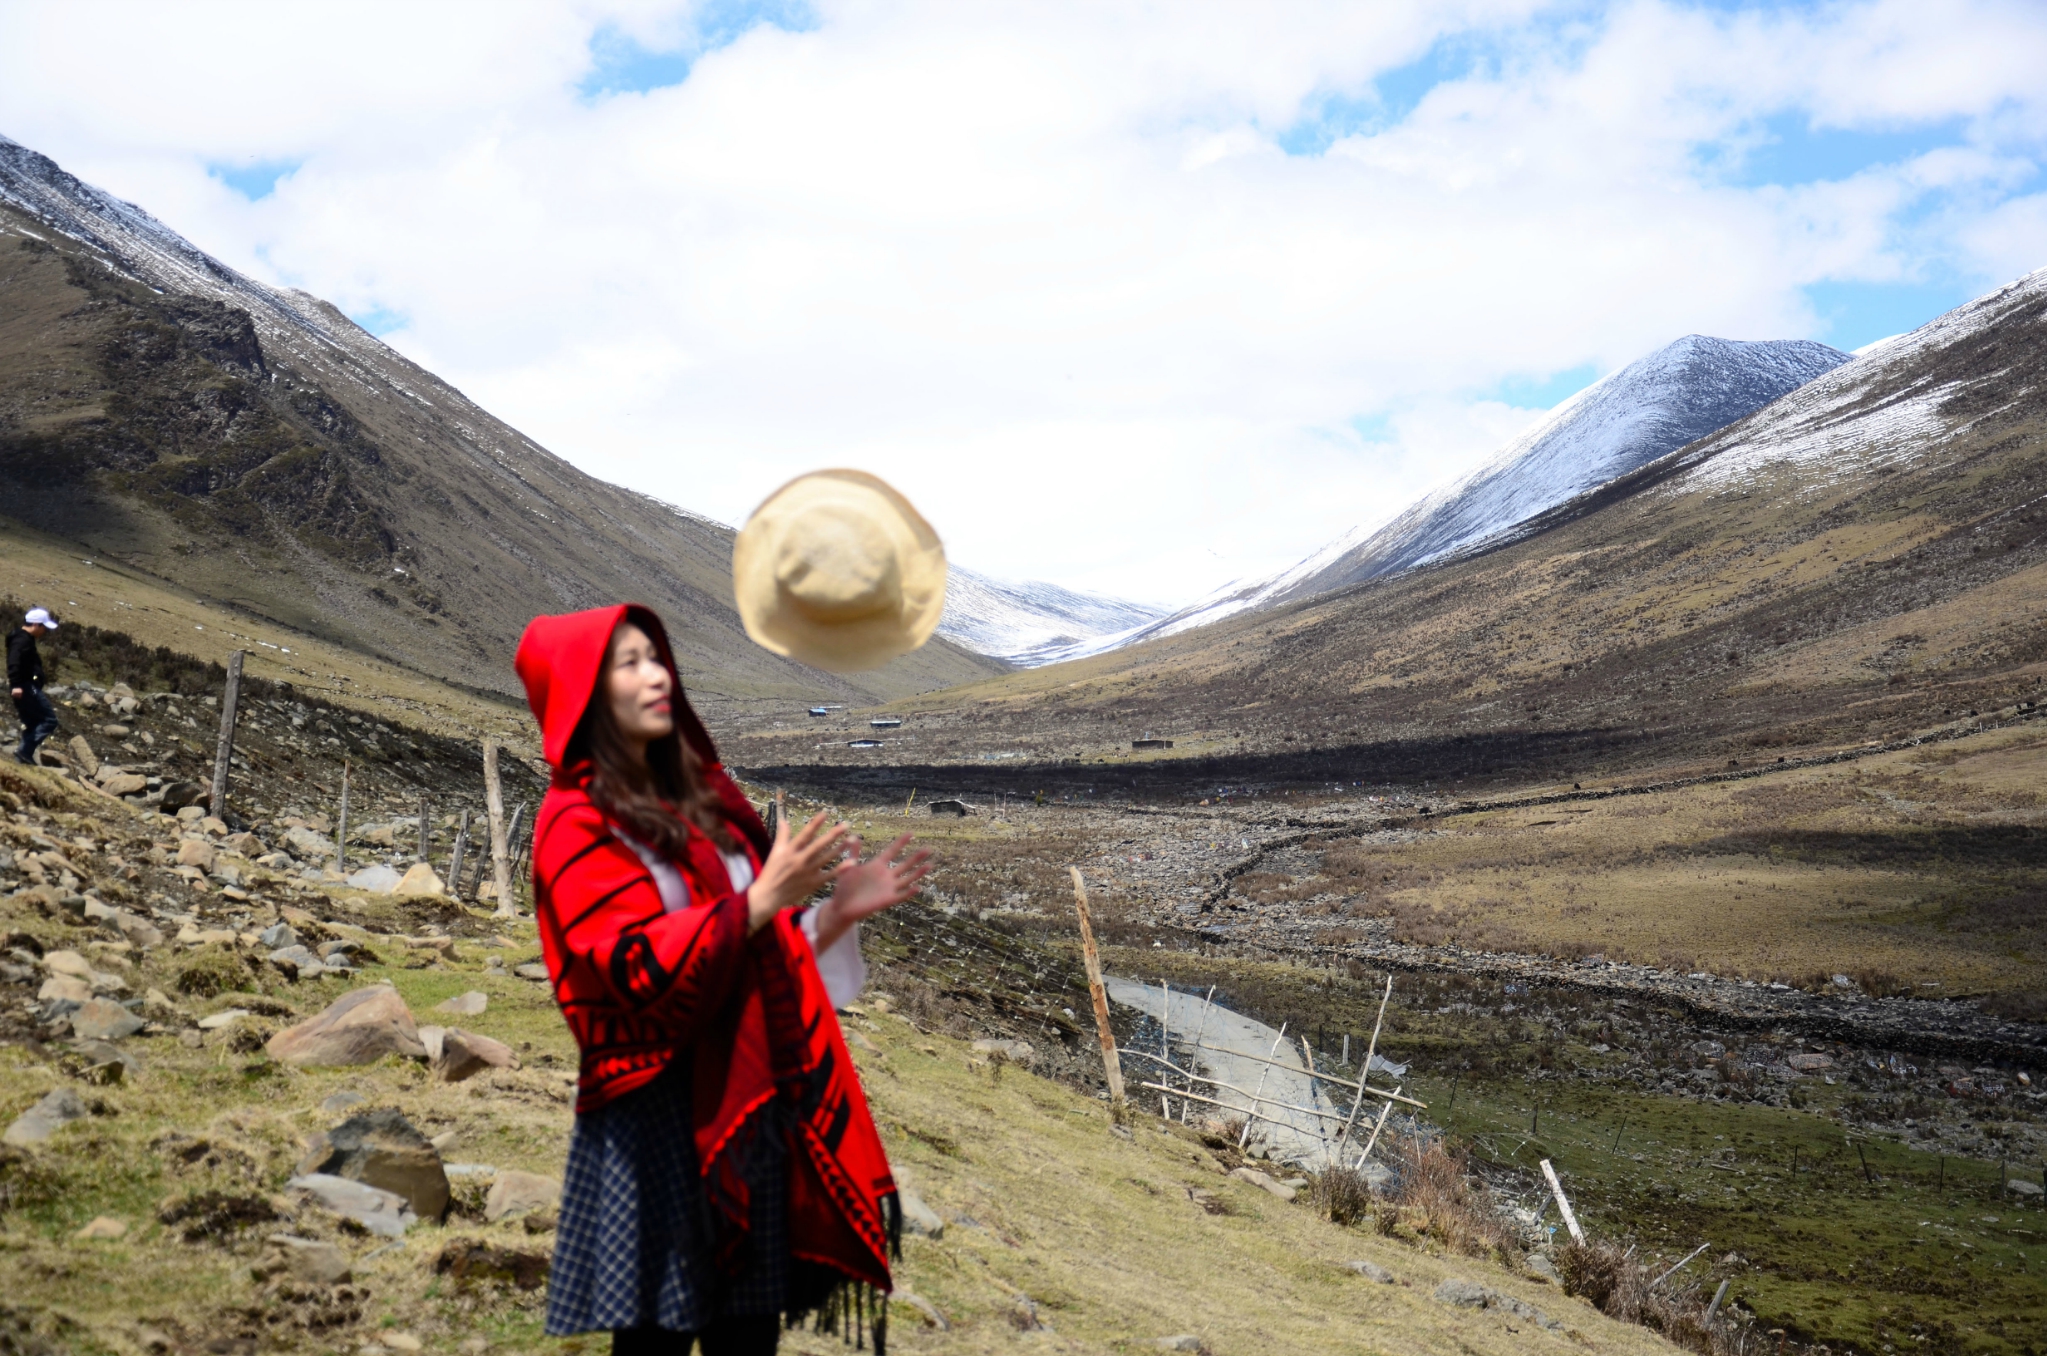 川西自驾三日游:最美乡村古镇甲居藏寨,天堂般的原始村庄莫斯卡，免费耍雪巴郎山